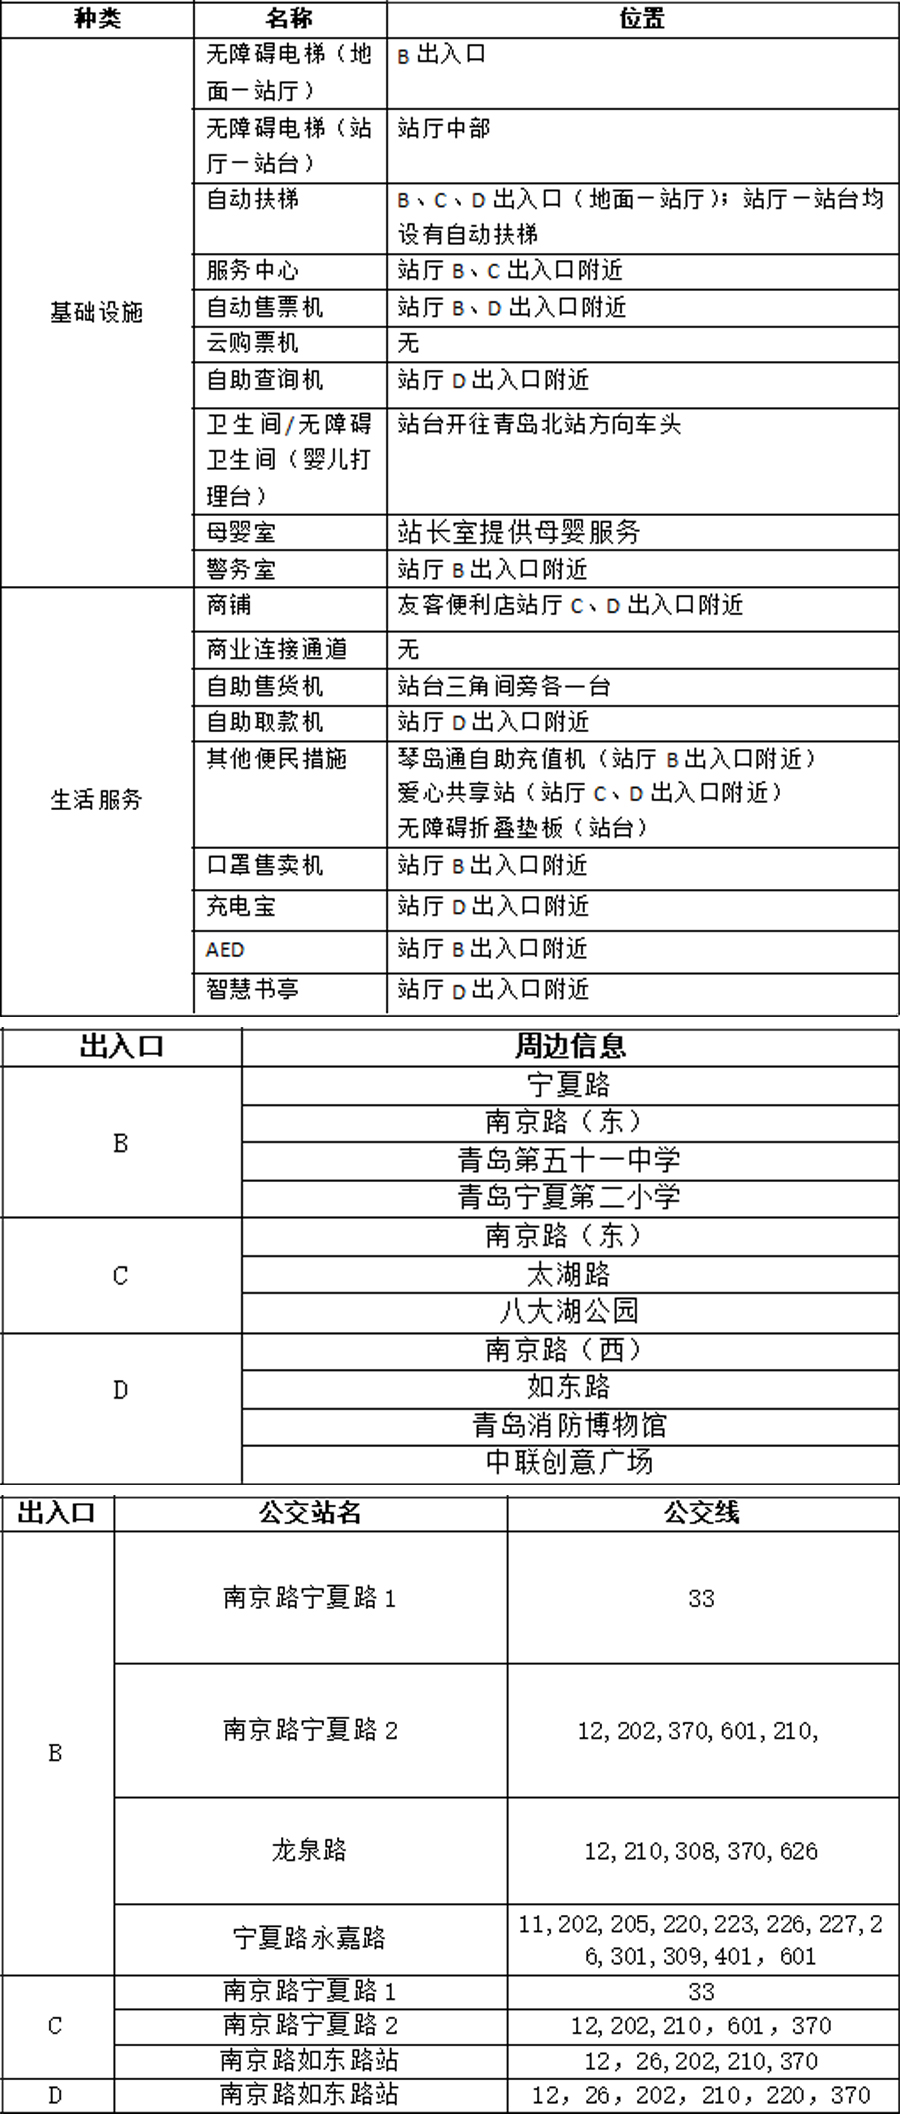 09宁夏路站站点信息统计表(1) 拷贝.jpg